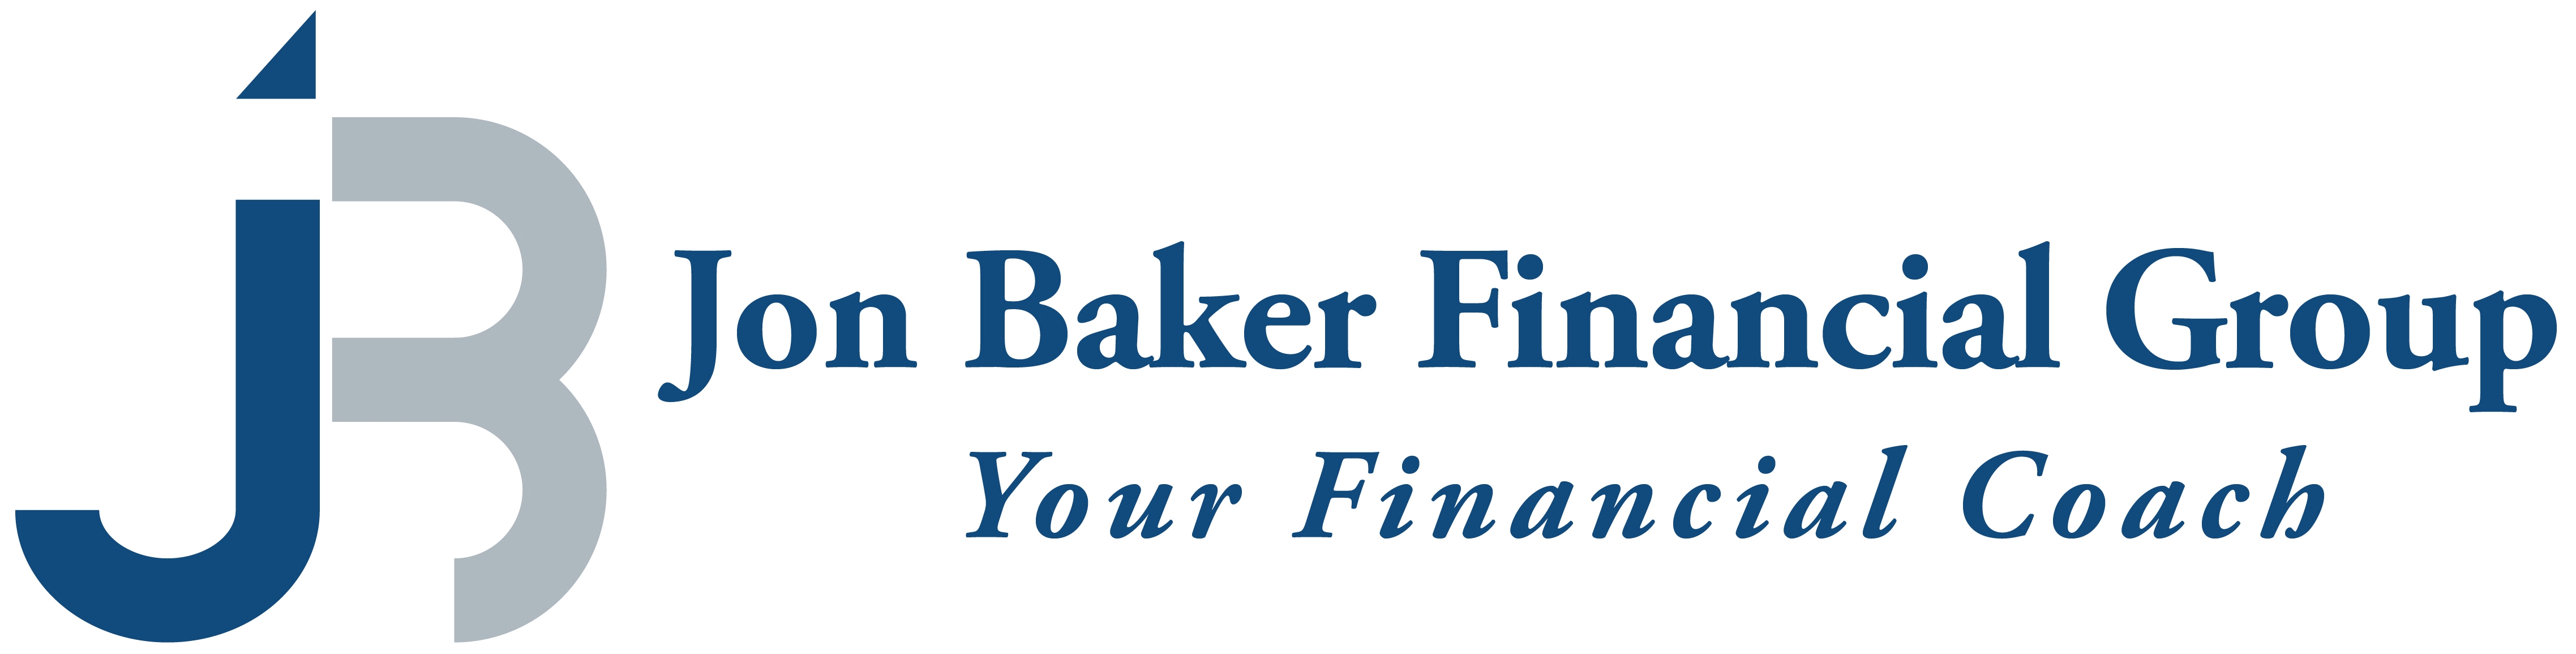 Jon Baker Financial